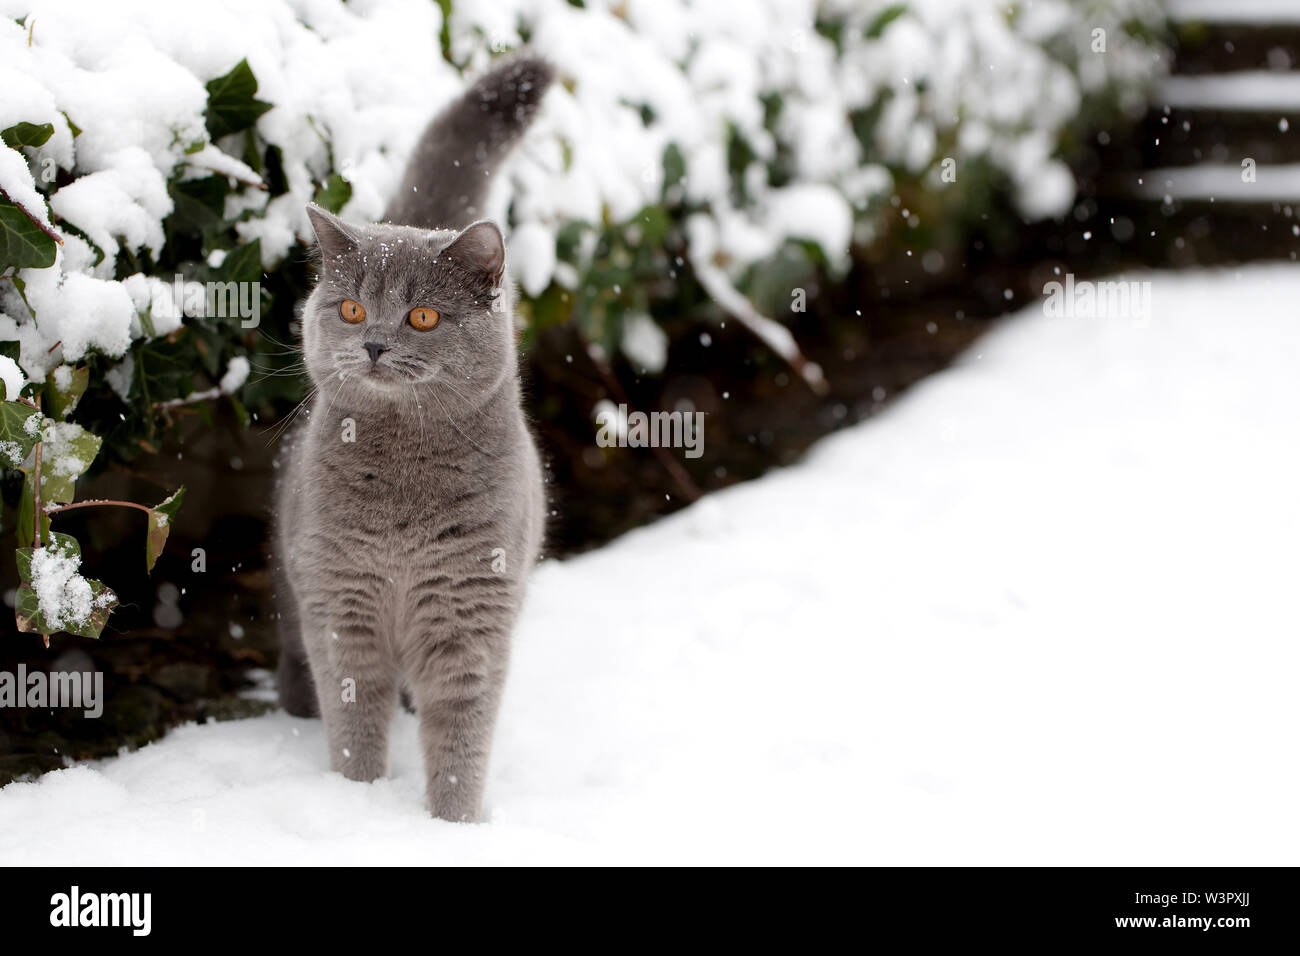 Britisch Kurzhaar Cat Grauer Kater 2 Jahre Alt Im Winter